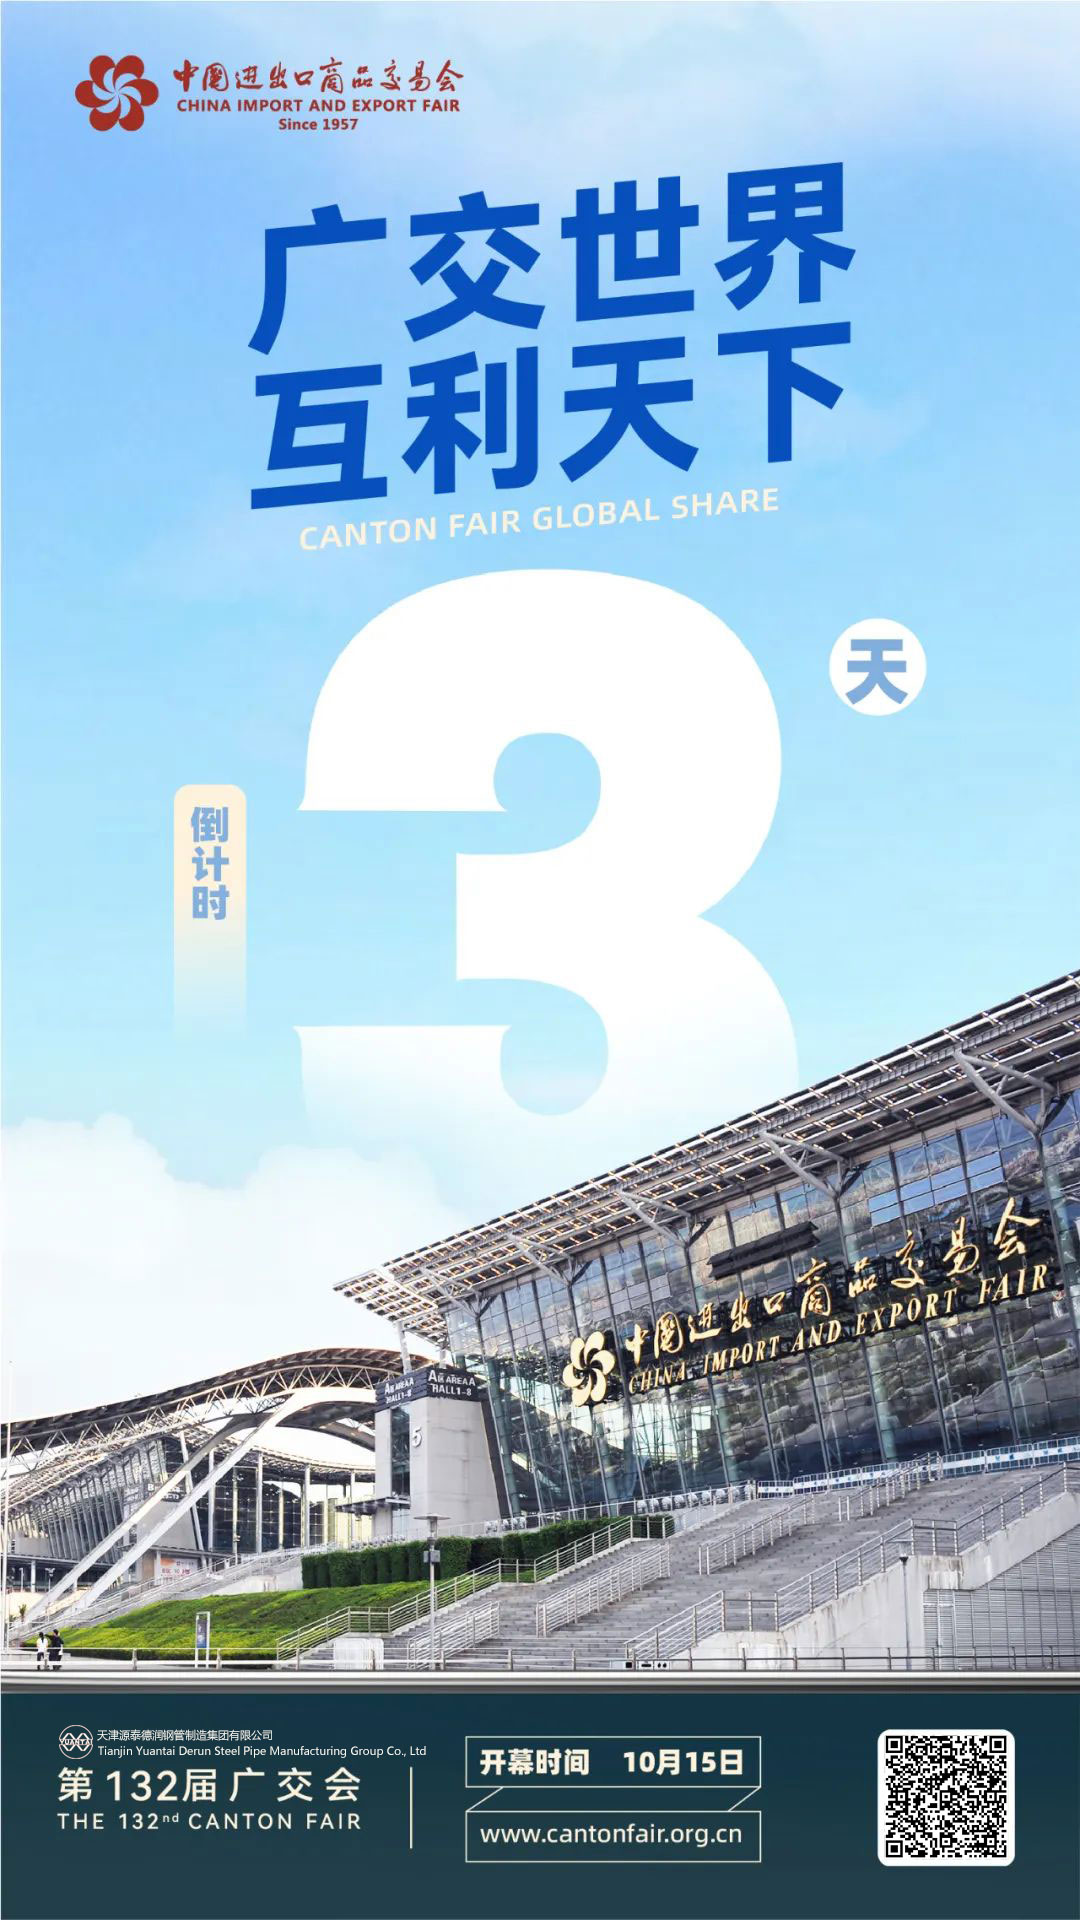 Cel de-al 132-lea Târg de Canton a intrat în 3 zile de numărătoare inversă – Tianjin Yuantaiderun Steel Pipe Manufacturing Group Co., Ltd